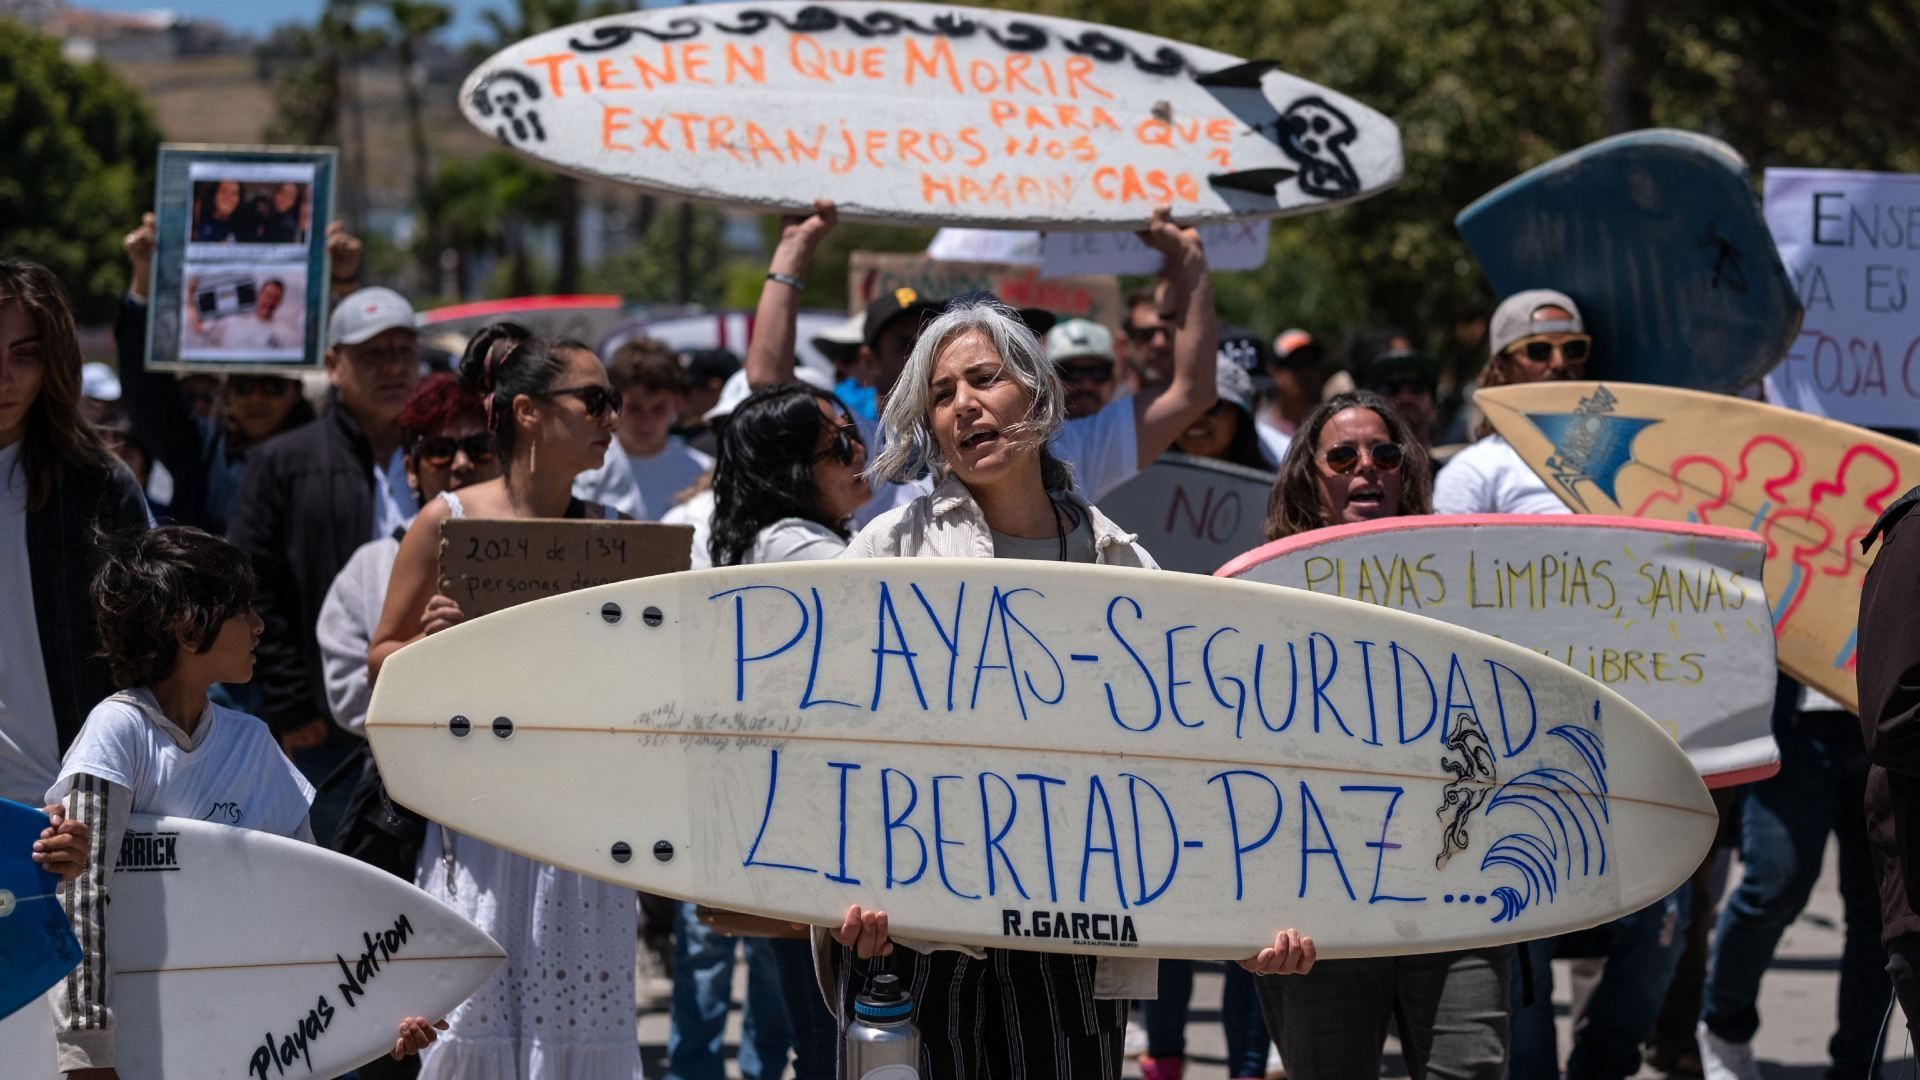 Protesta por asesinato de 3 extranjeros en Ensenada